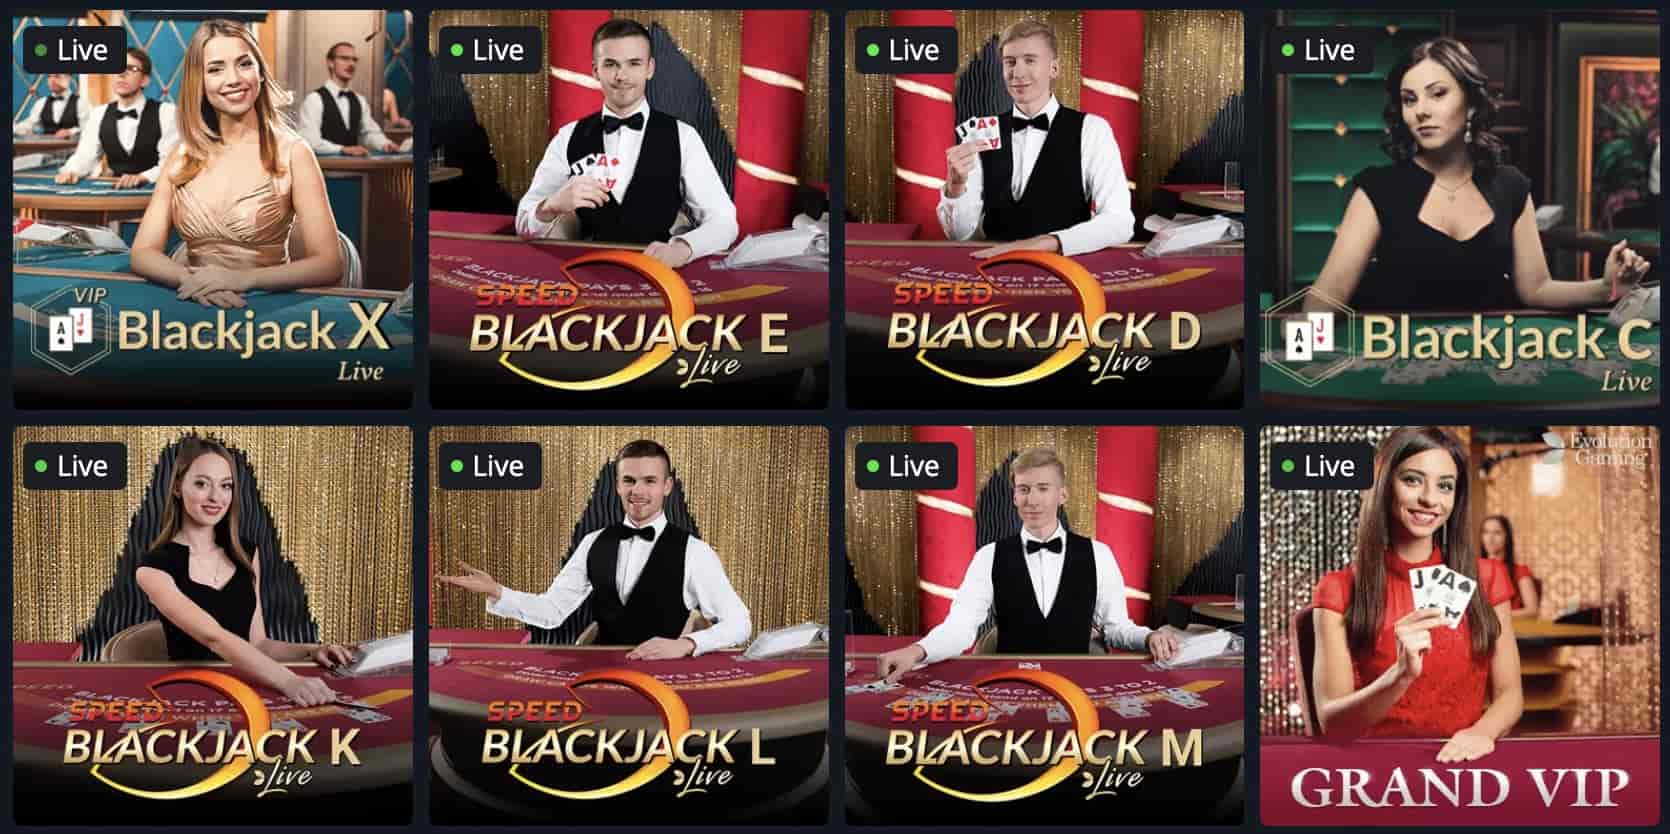 goldenstar-casino-blackjack